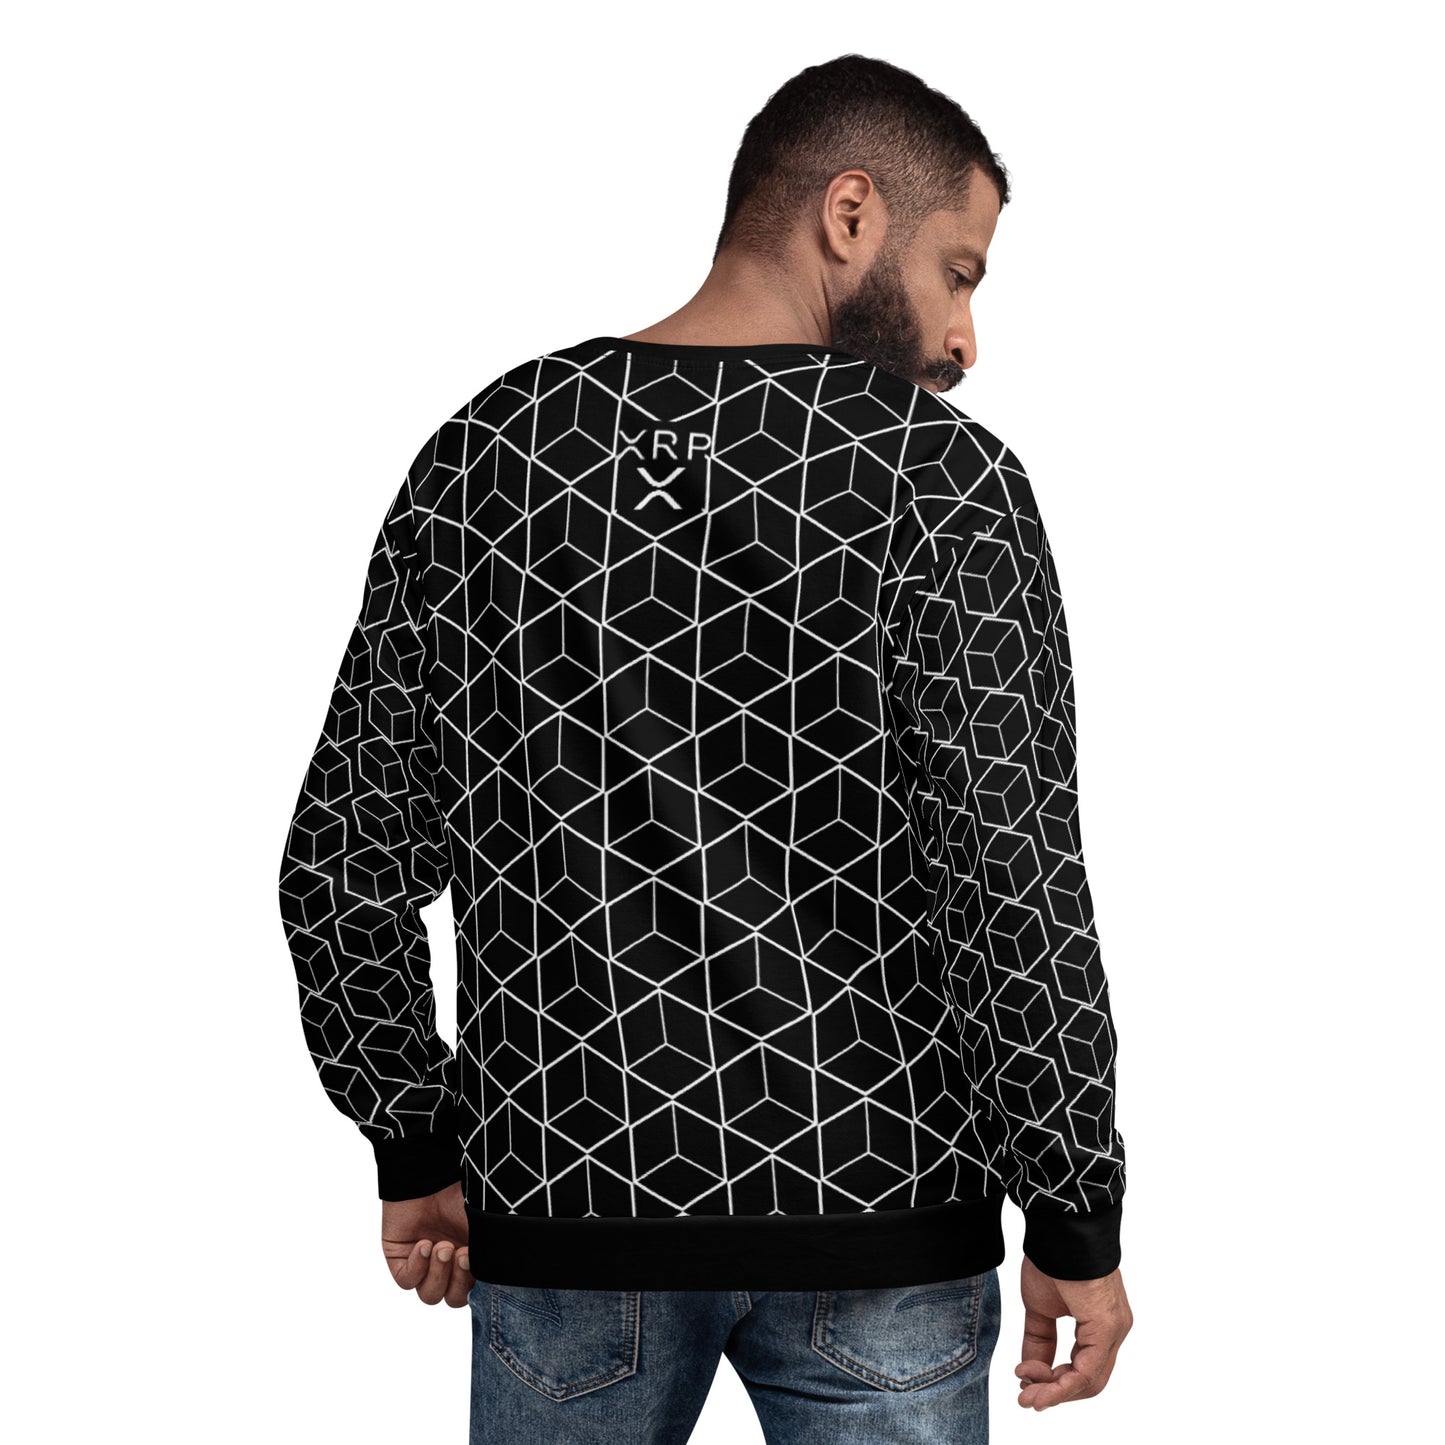 Xrp Lines Sweatshirt